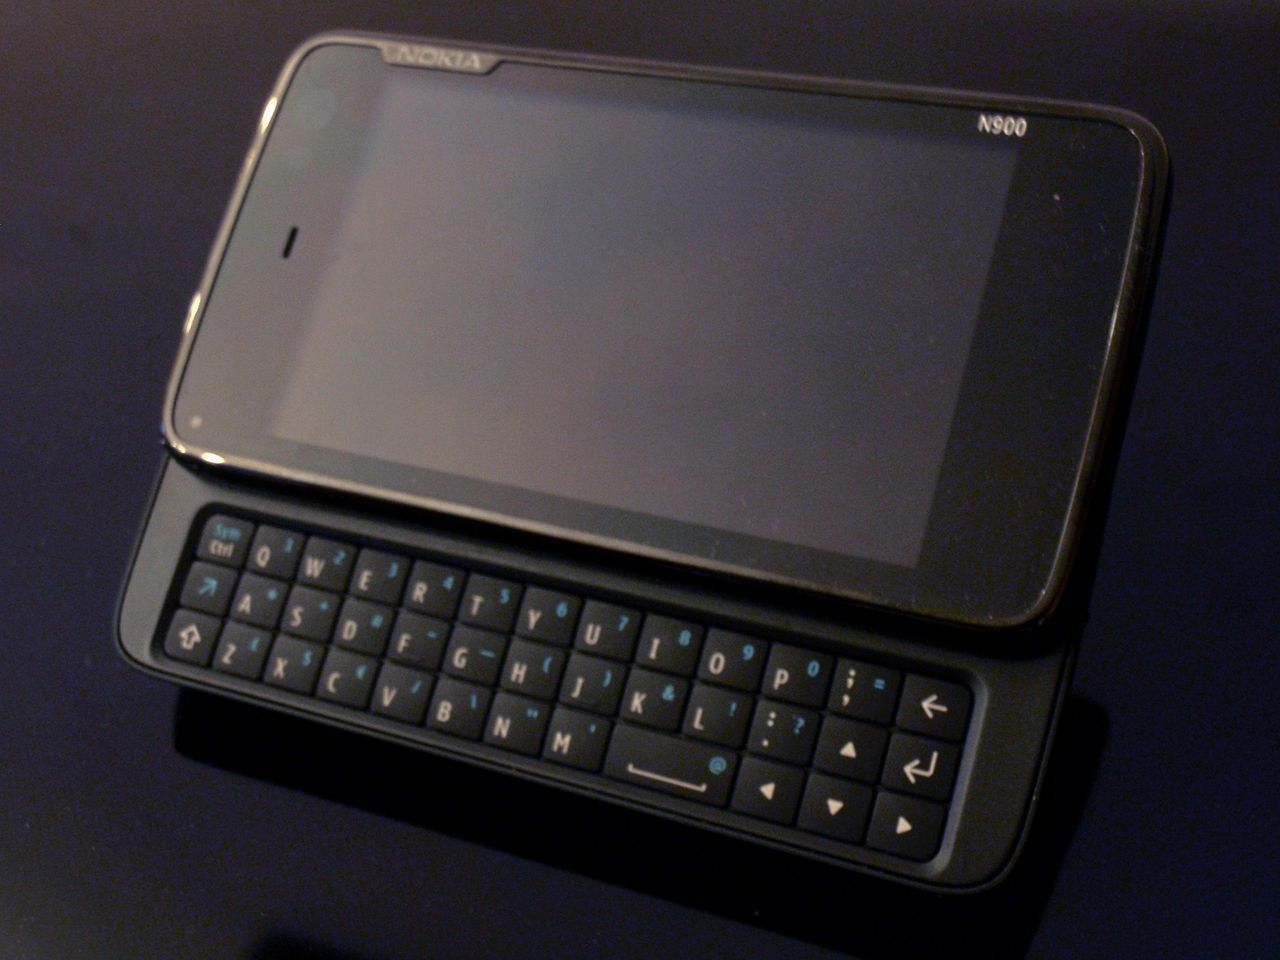 Nokia N900: genialny sprzęt, ale pan Kallasvuo nie wiedział, co z nim zrobić (źródło: Wikimedia)